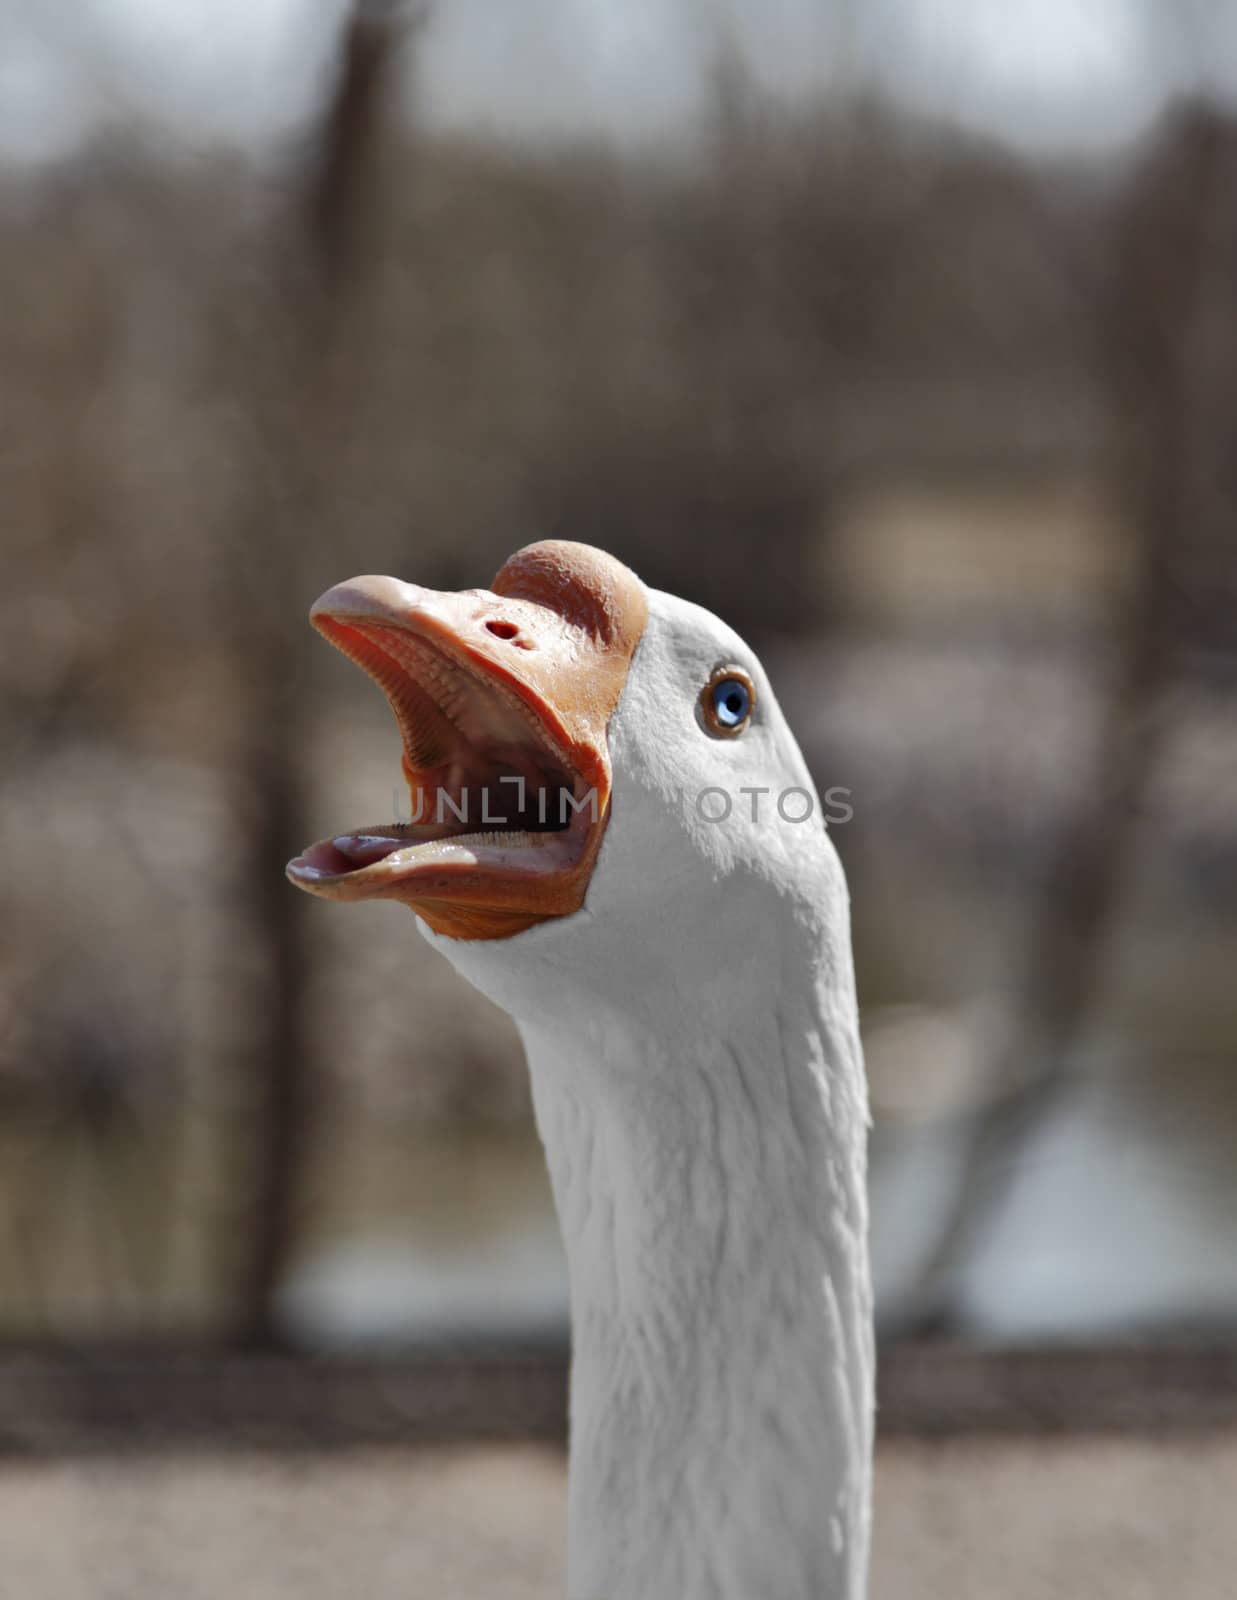 A close up shot of a goose hissing at the camera.